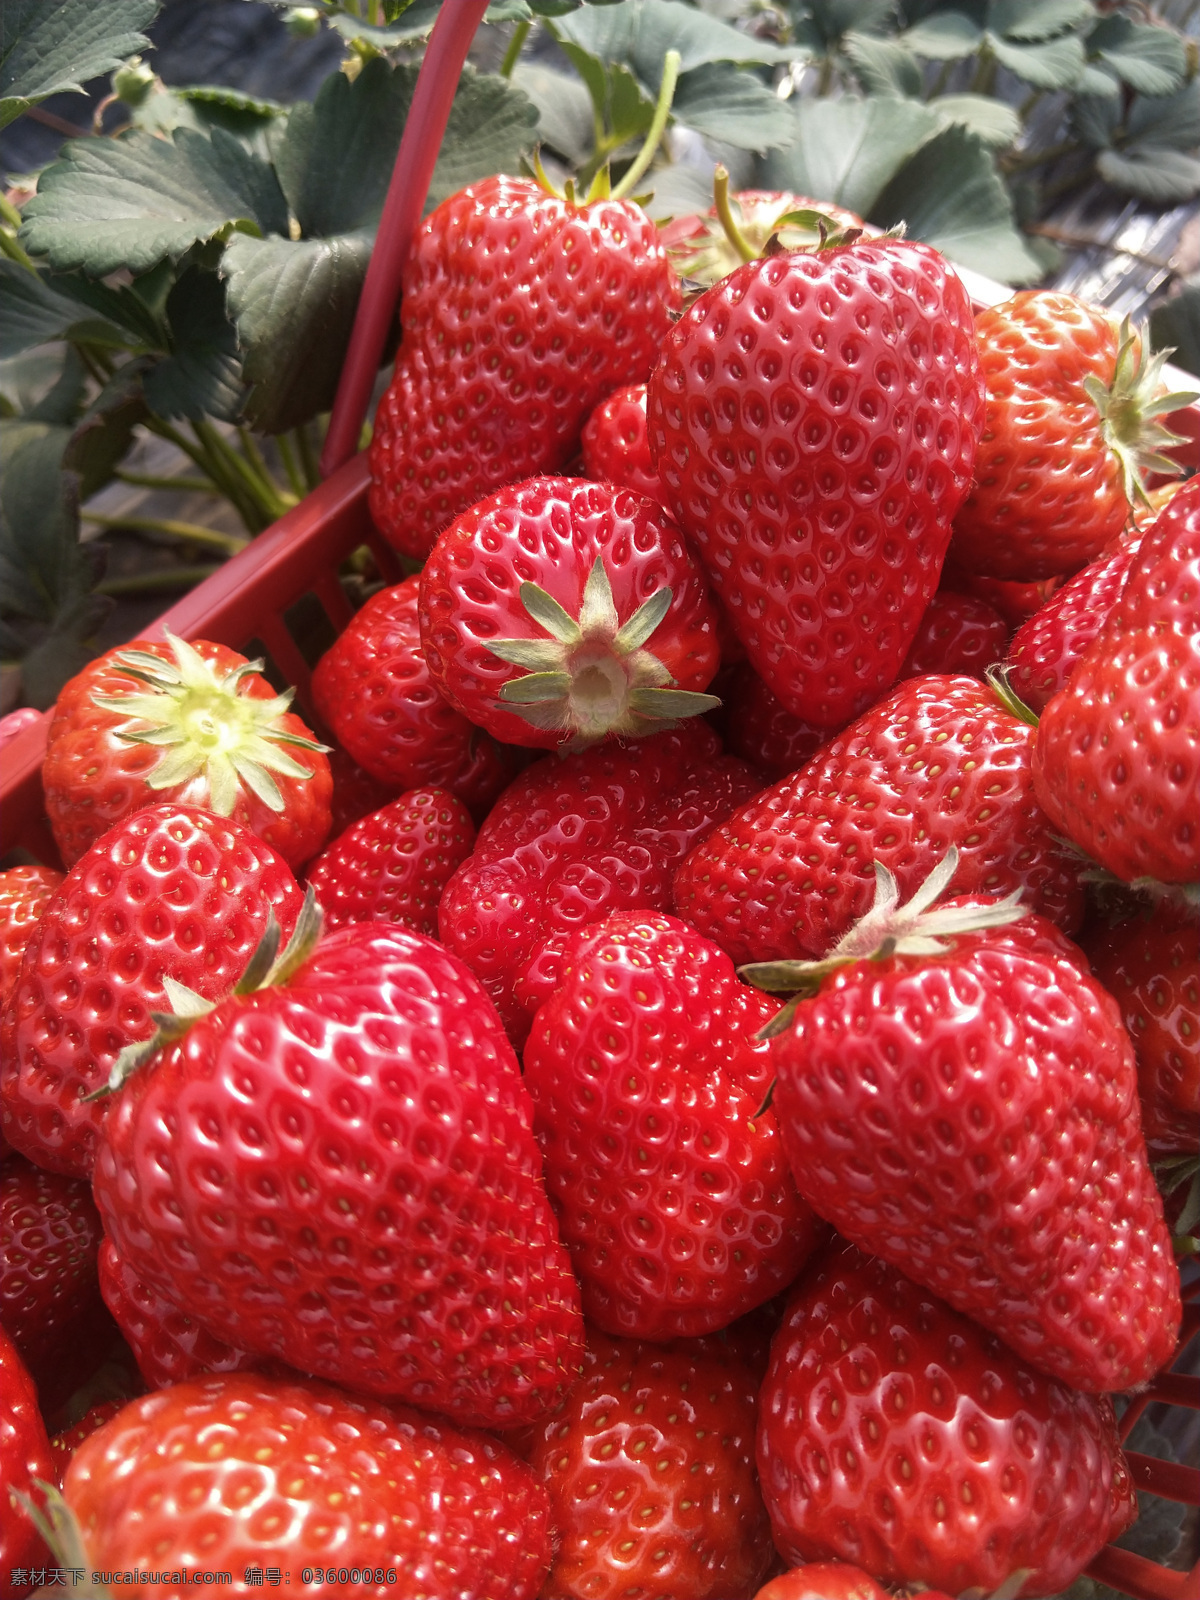 新鲜的草莓 草莓 新鲜 食物 诱人 可口 红色 美食天下 生物世界 水果